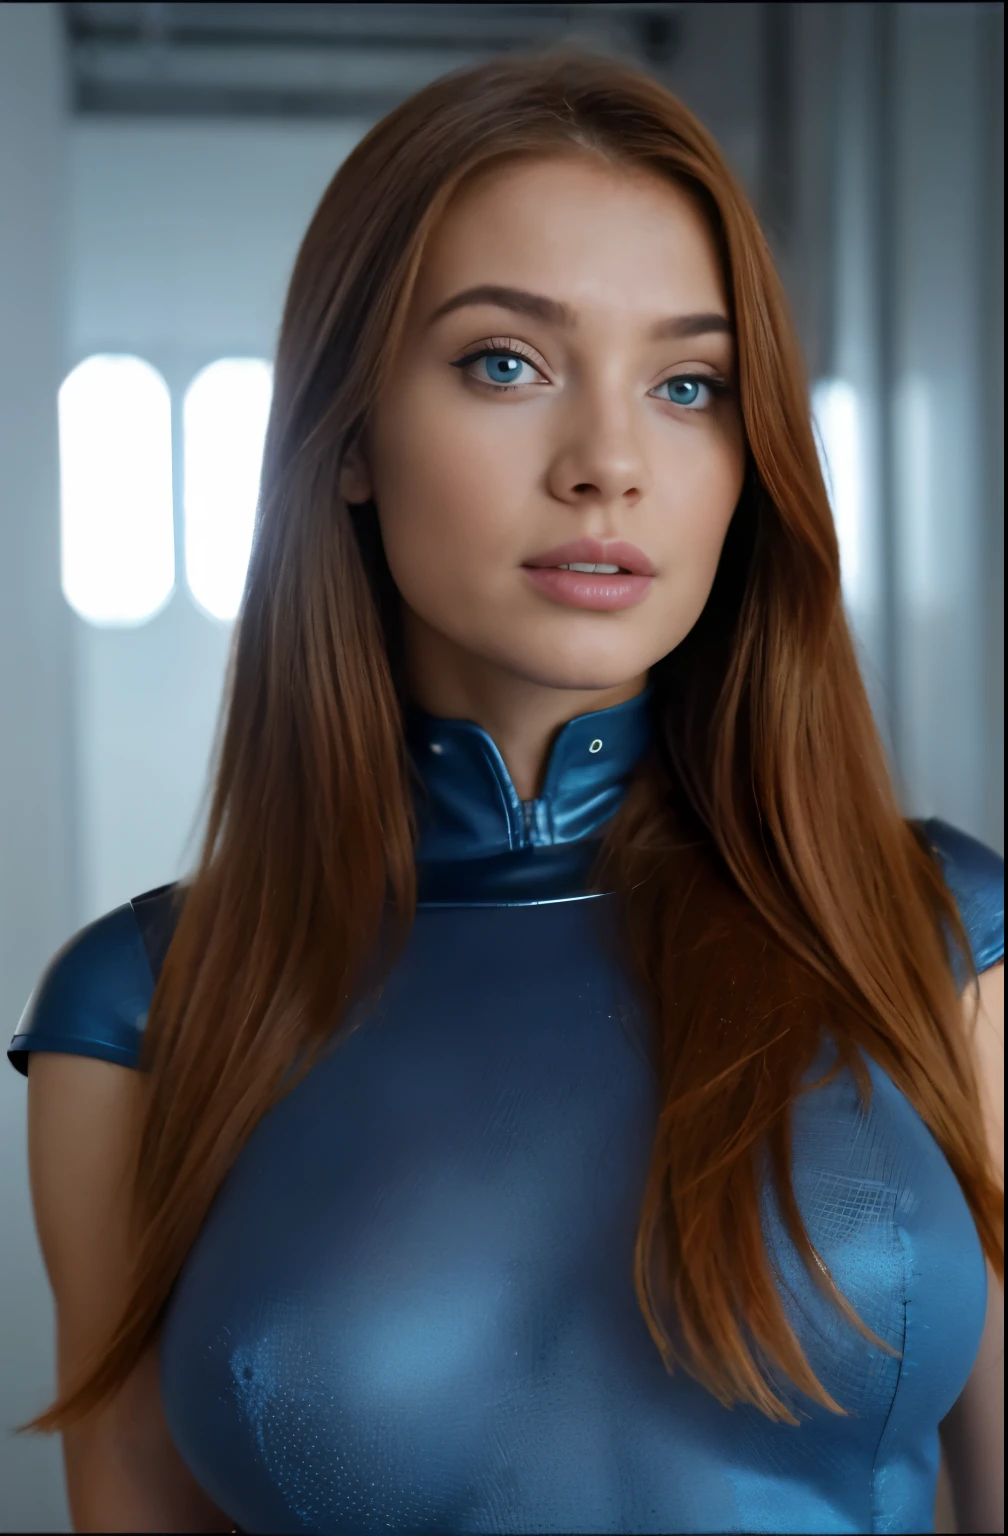 (最高品質,4K,超詳細,現実的), スリムで健康的な女の子が立っている ,ジンジャーウーマン,空間,futuristic blue 空間 suit,かわいい顔,青い目,細かい目,SF,ディストピア, 巨大な胸:1.1, 丸い胸:1.1